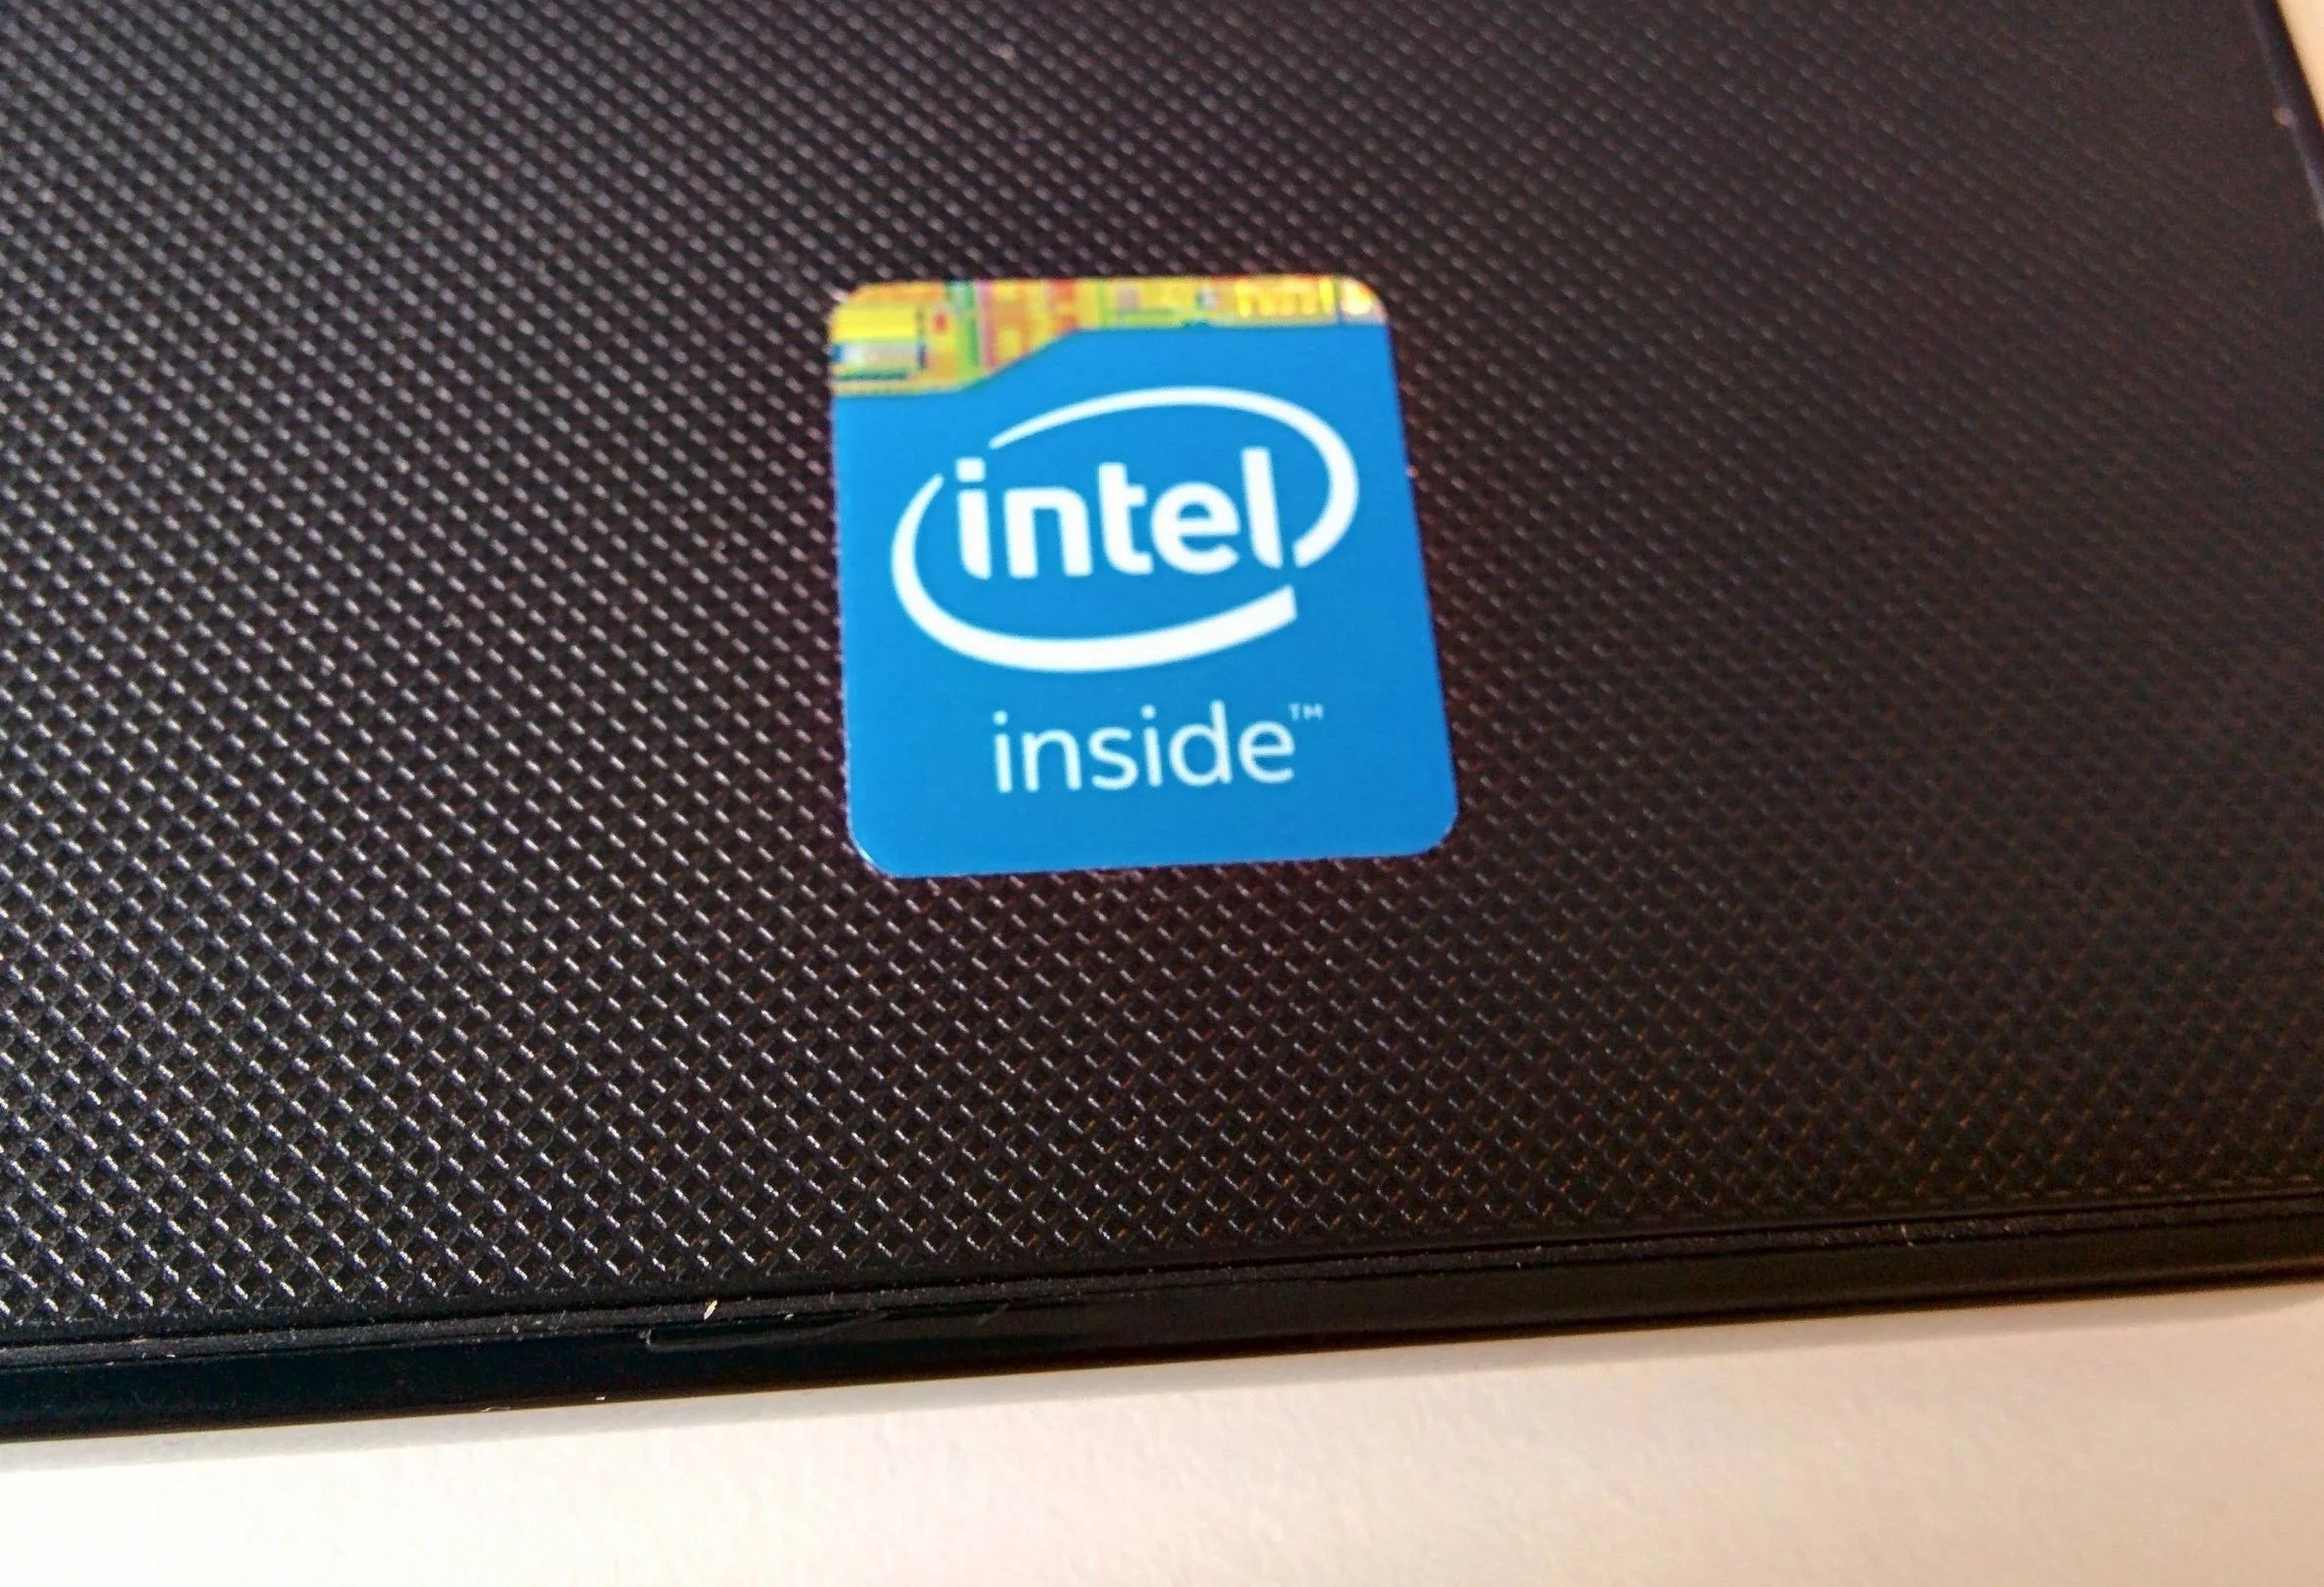 ¿Tu PC no tiene etiqueta Intel Inside? Intel te la envía gratis a casa, incluso con ordenadores de segunda mano